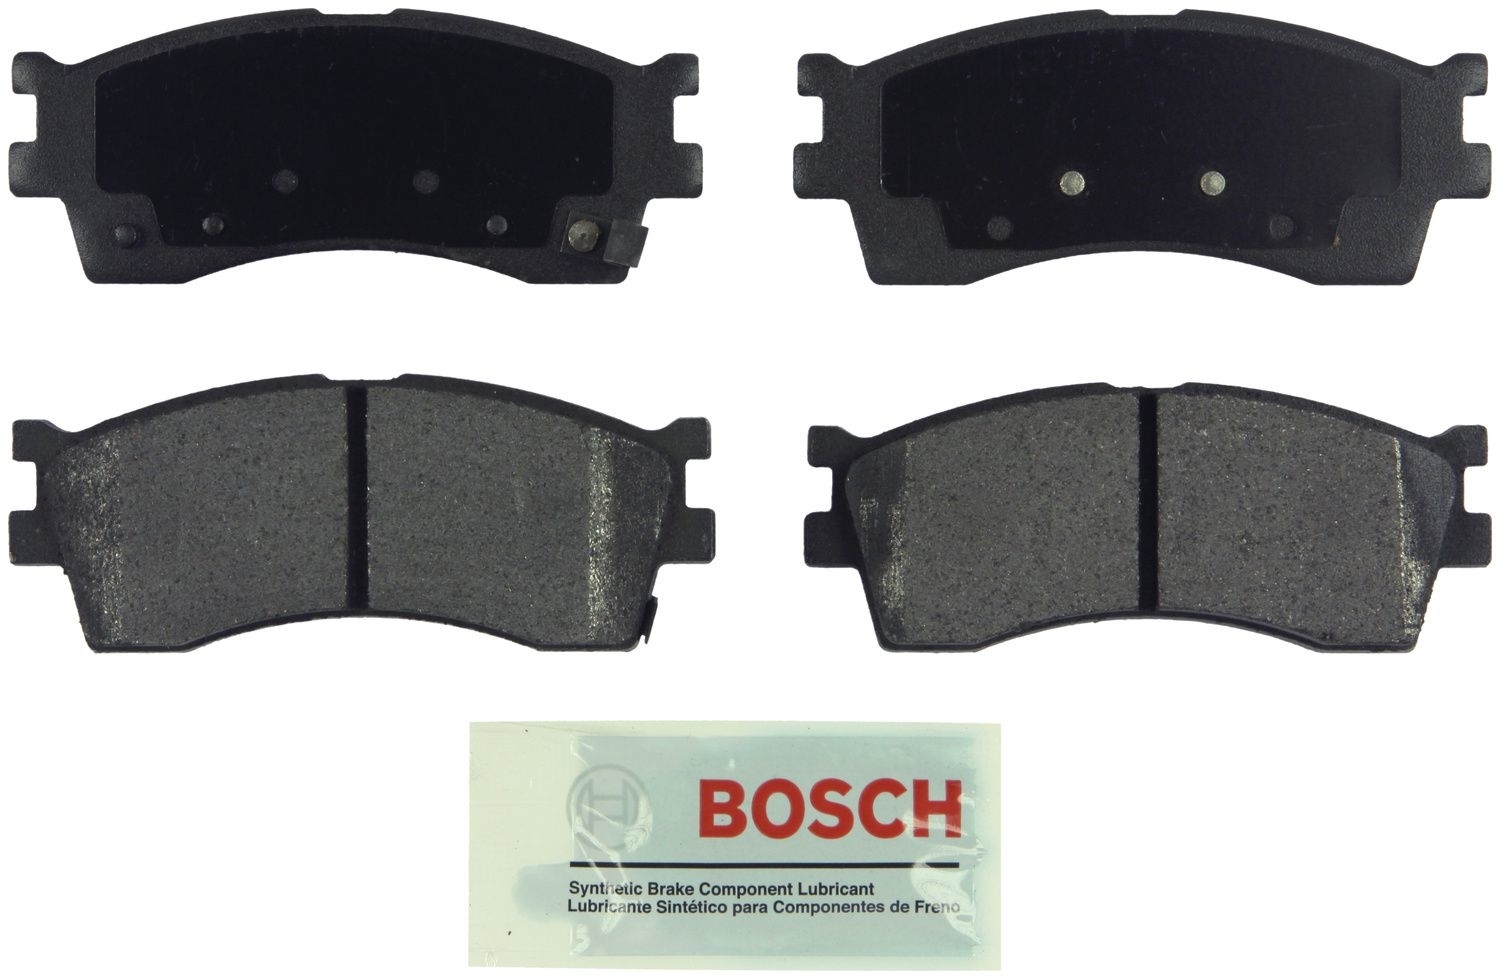 BOSCH BRAKE - Bosch Blue Ceramic Brake Pads (Front) - BQC BE889